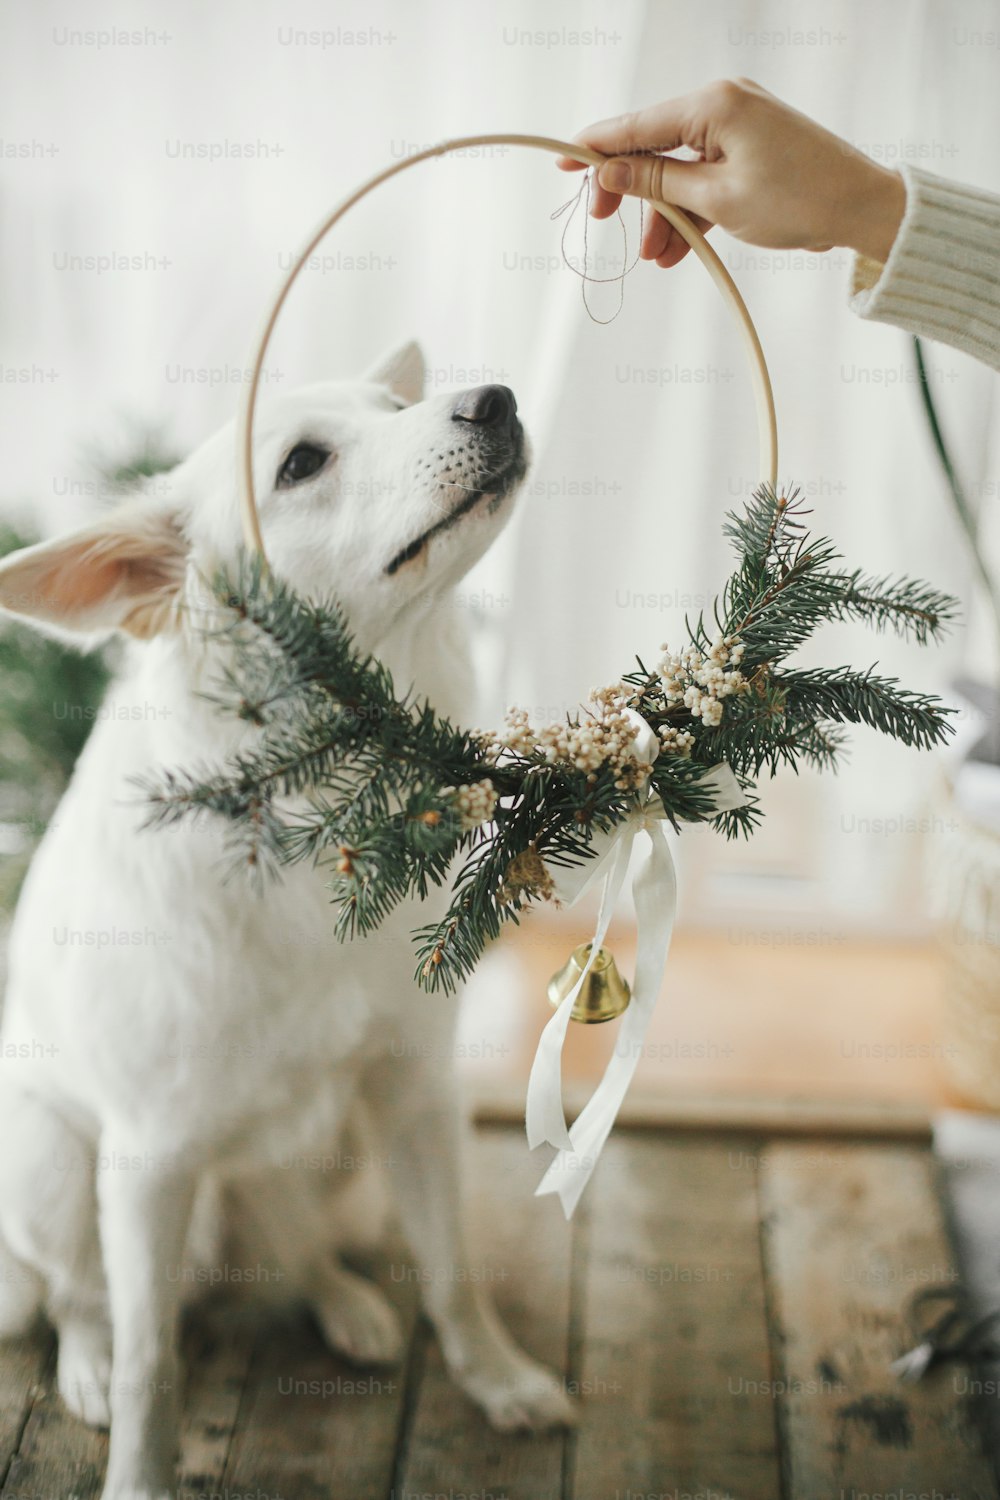 Mano di donna che mette una moderna corona di natale sull'adorabile cane bianco. Pastore svizzero bianco carino con emozione divertente in un'elegante ghirlanda di natale seduta in una moderna stanza scandinava. Buon Natale!